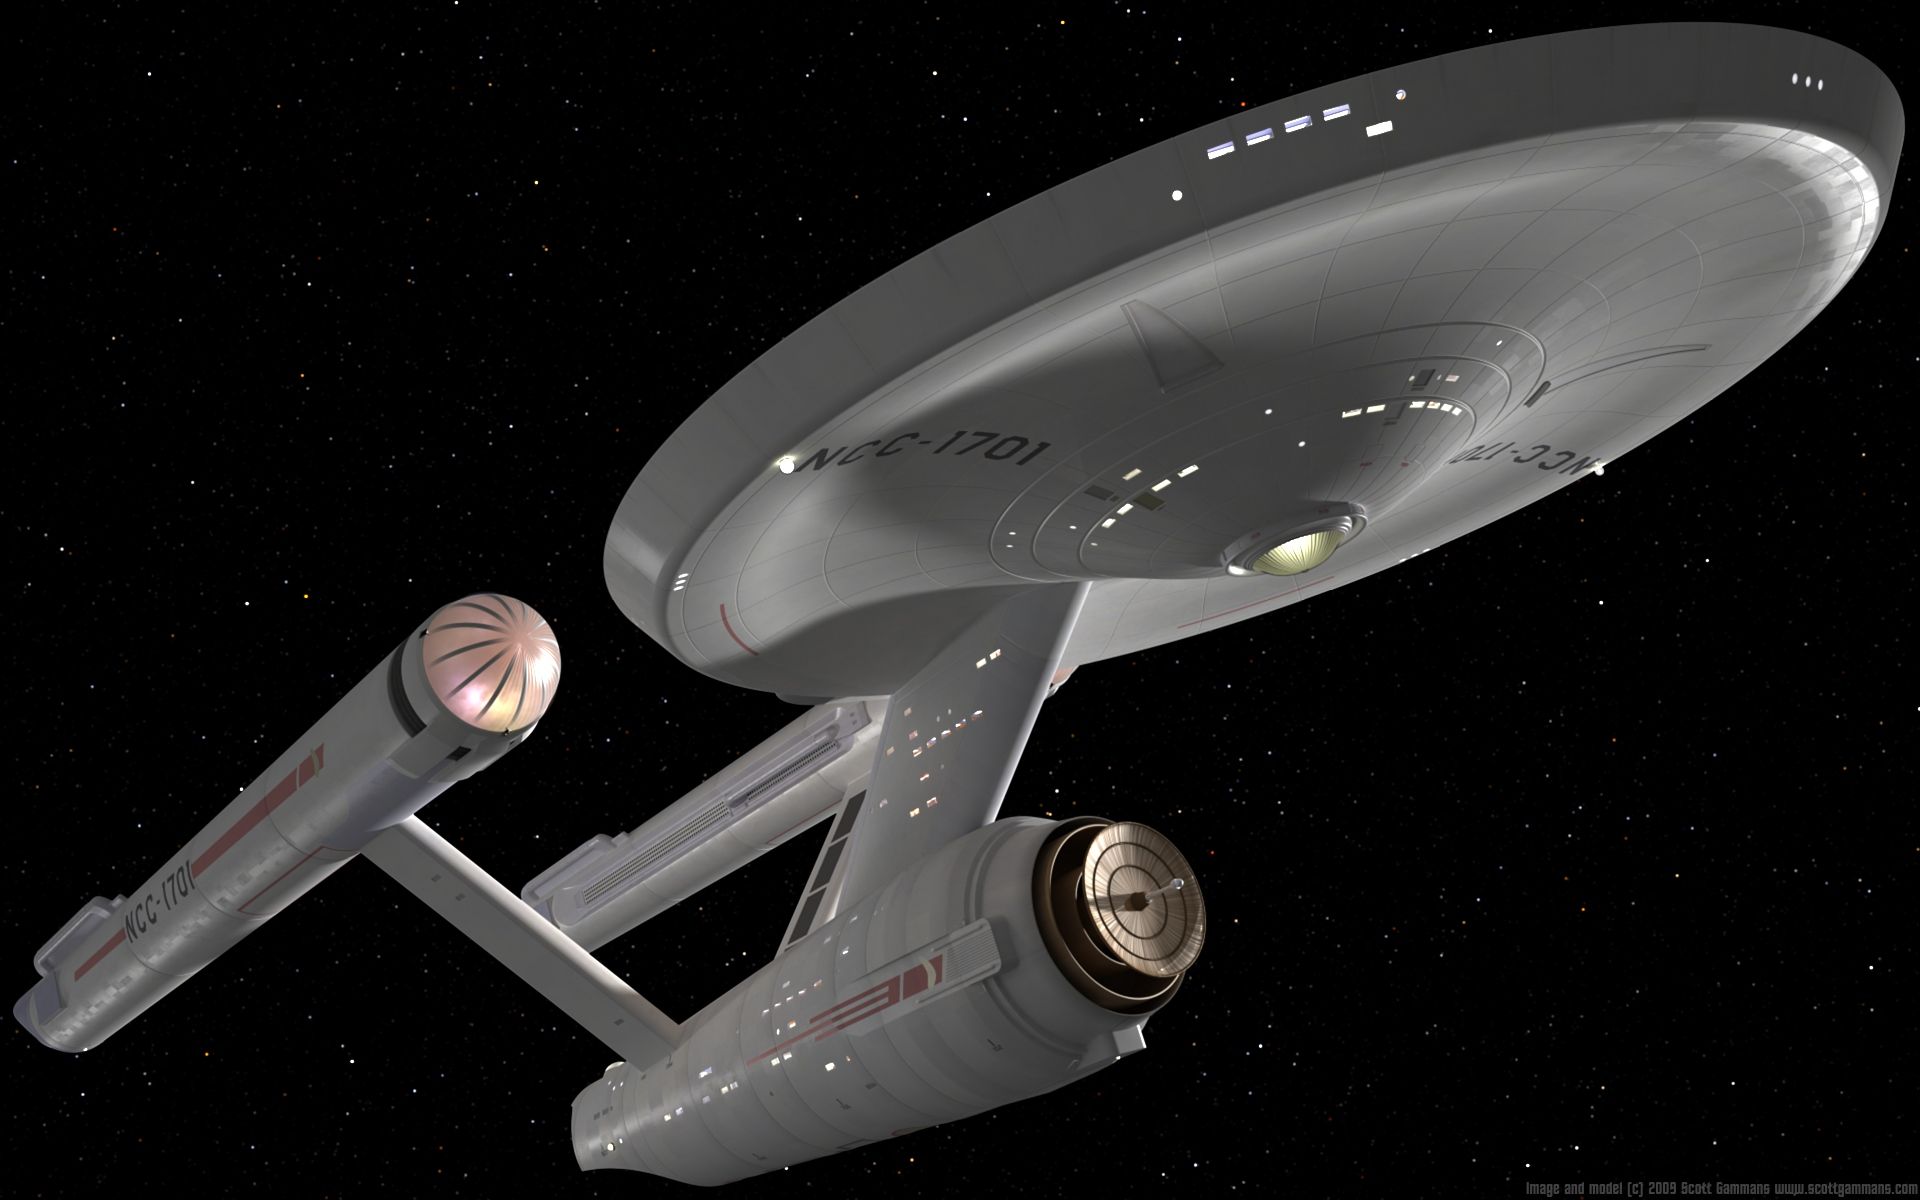 enterprise from star trek